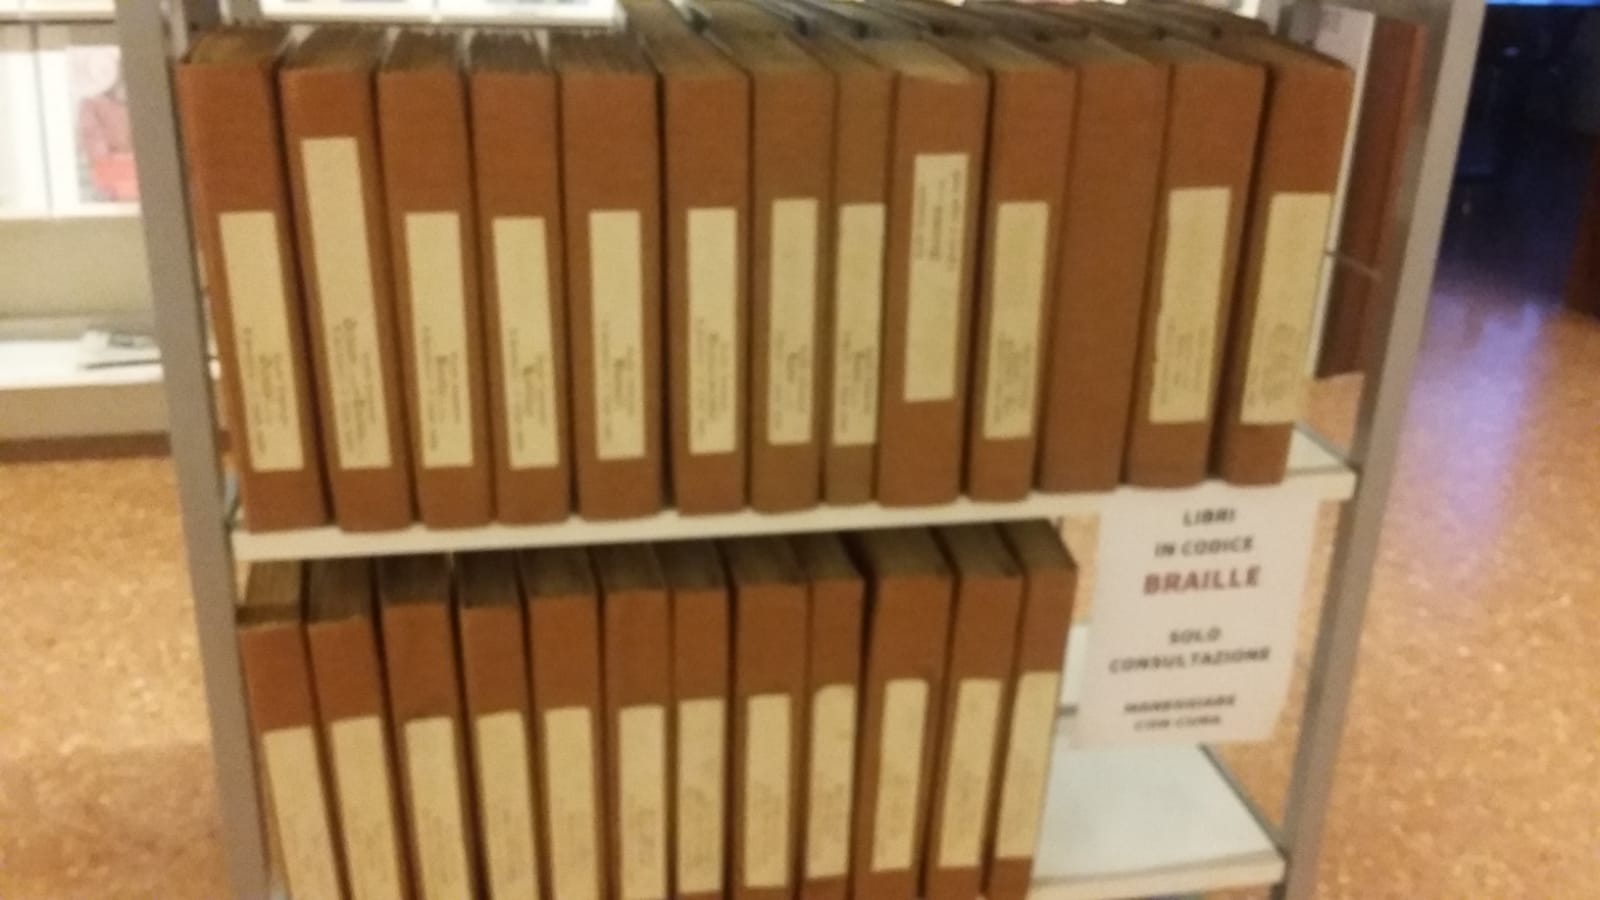 Libri in braille donati alla Biblioteca. Aperta la sezione per non vedenti